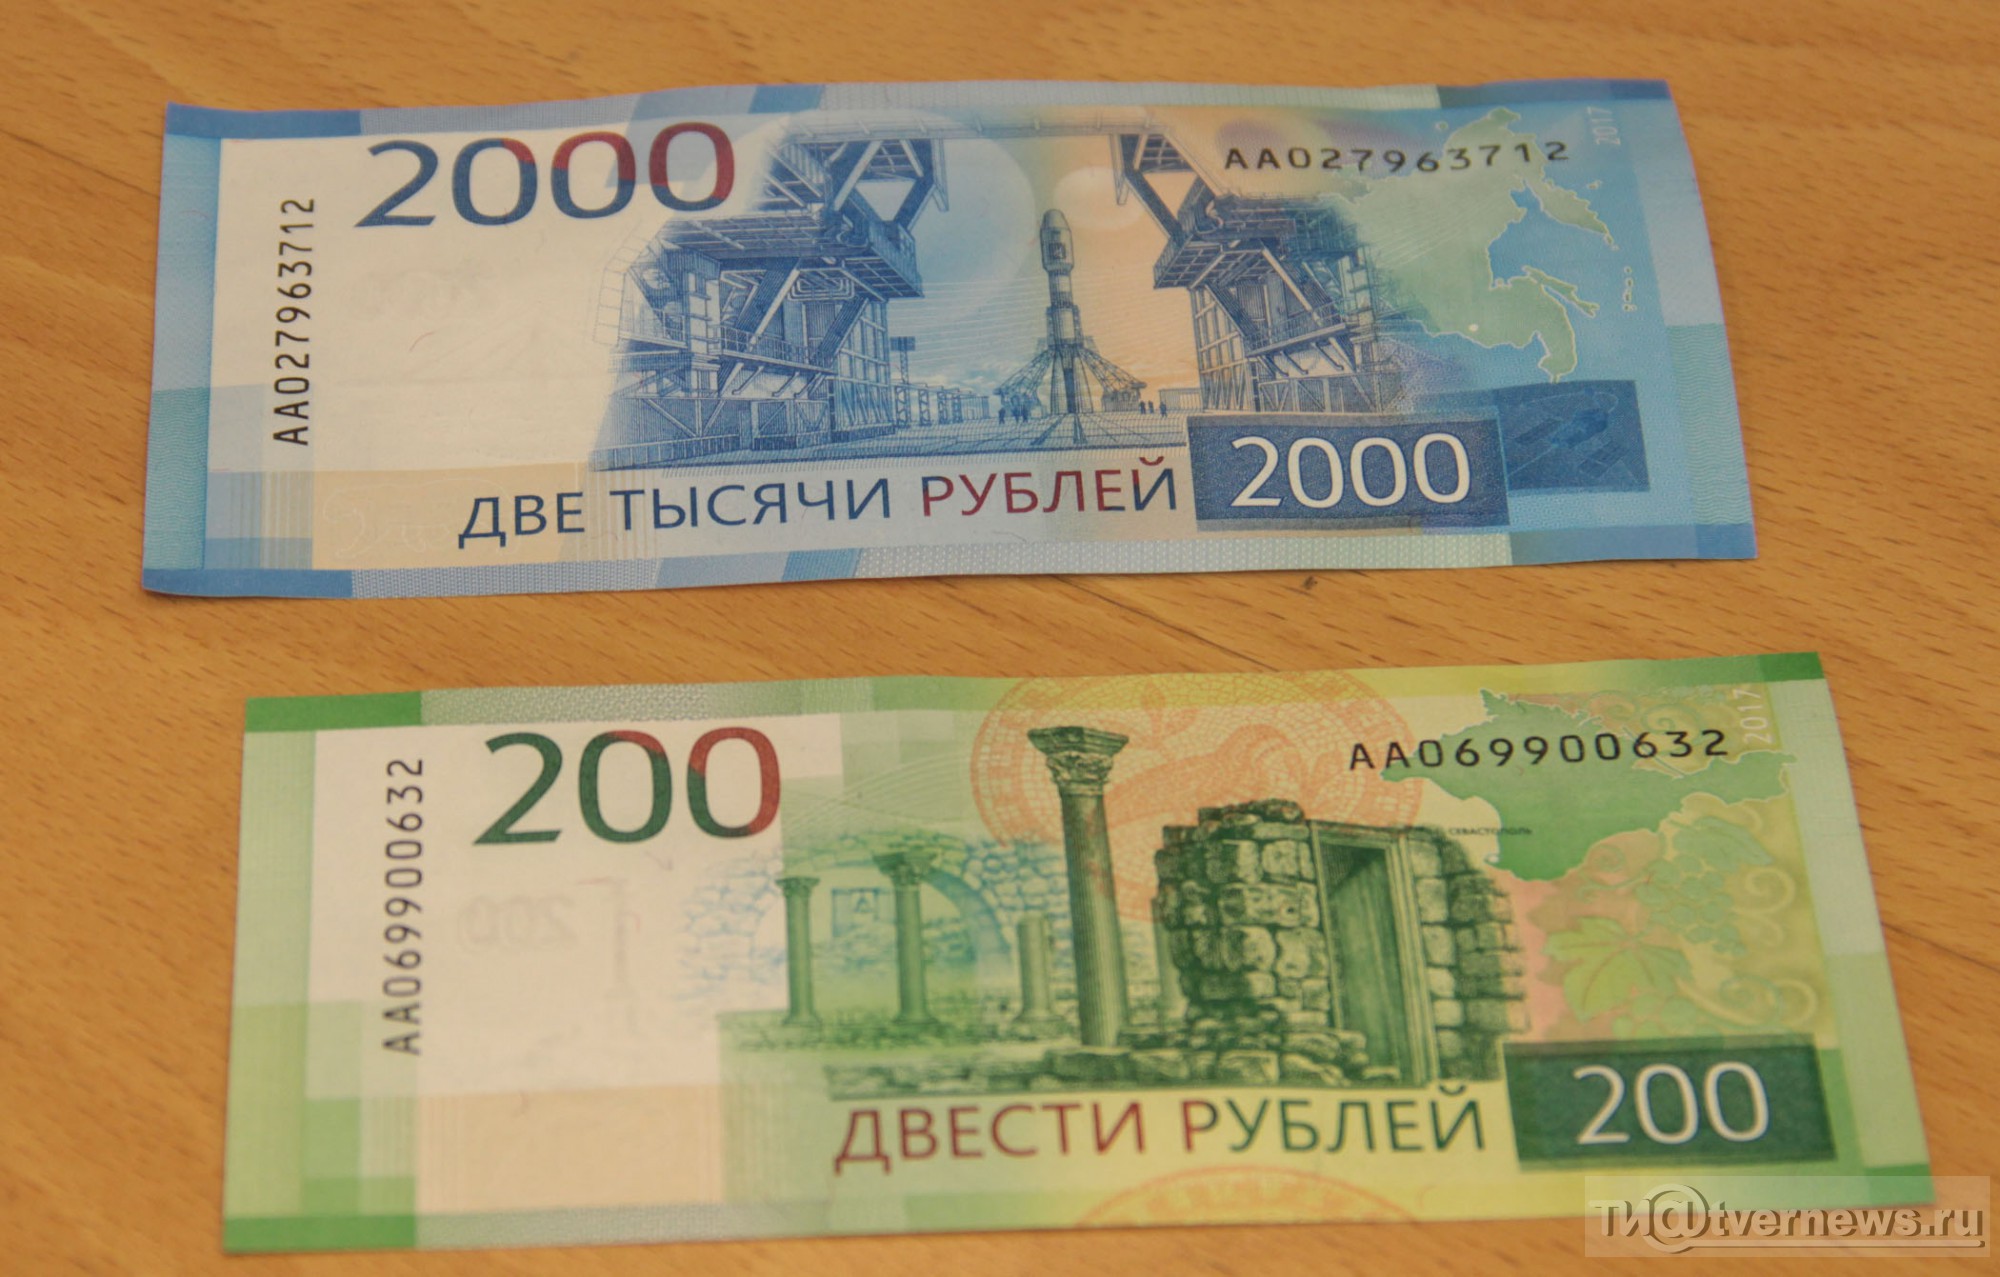 Бесплатные 200 рублей. 200 И 2000 рублей. Купюры 200 и 2000 рублей. 200 Рублей банкнота. Две тысячи рублей.